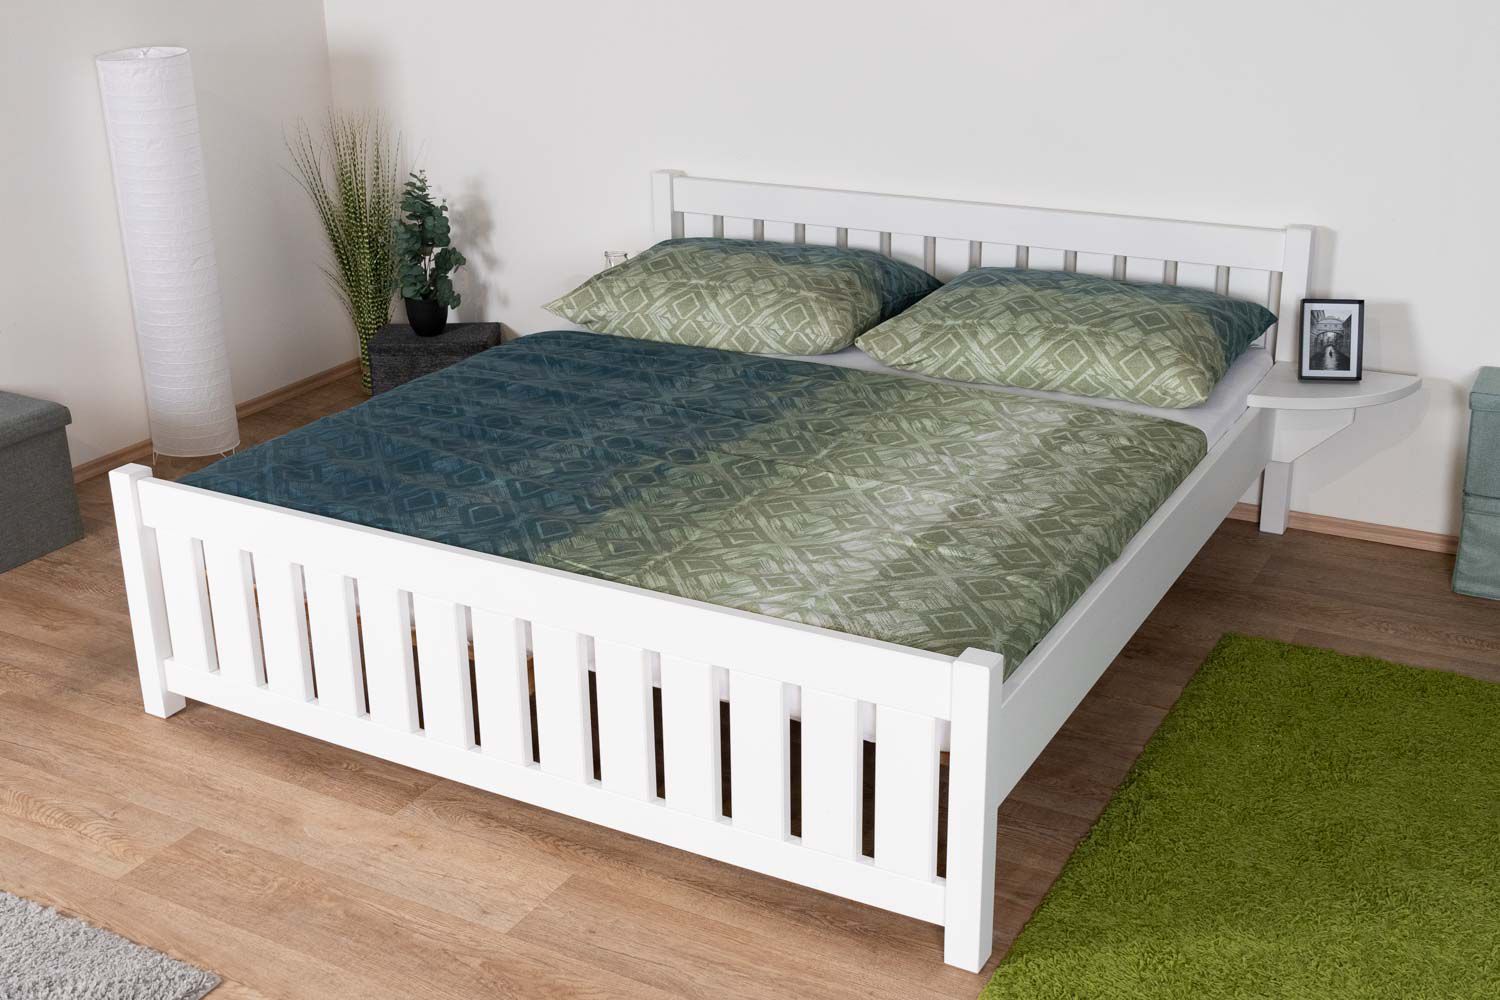 Weißes Doppelbett / Gästebett Buche Vollholz 106, inkl. Lattenrost, Liegefläche 180 x 200 cm, hochwertig verarbeitet, breite Bettpfosten, einfache Montage